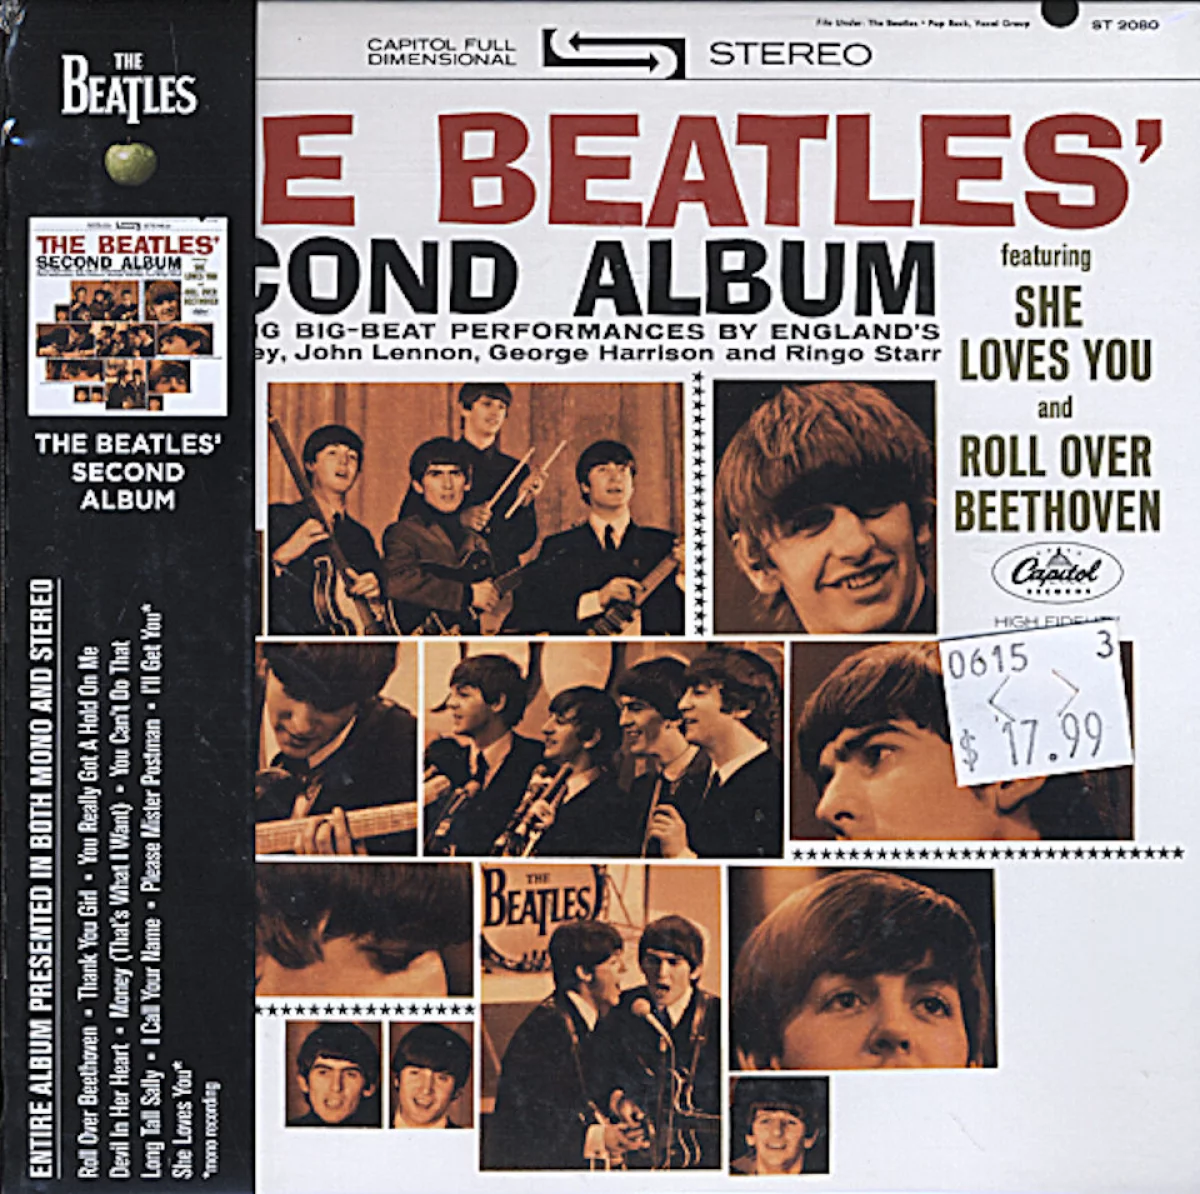 The Beatles CD, 2014 at Wolfgang's